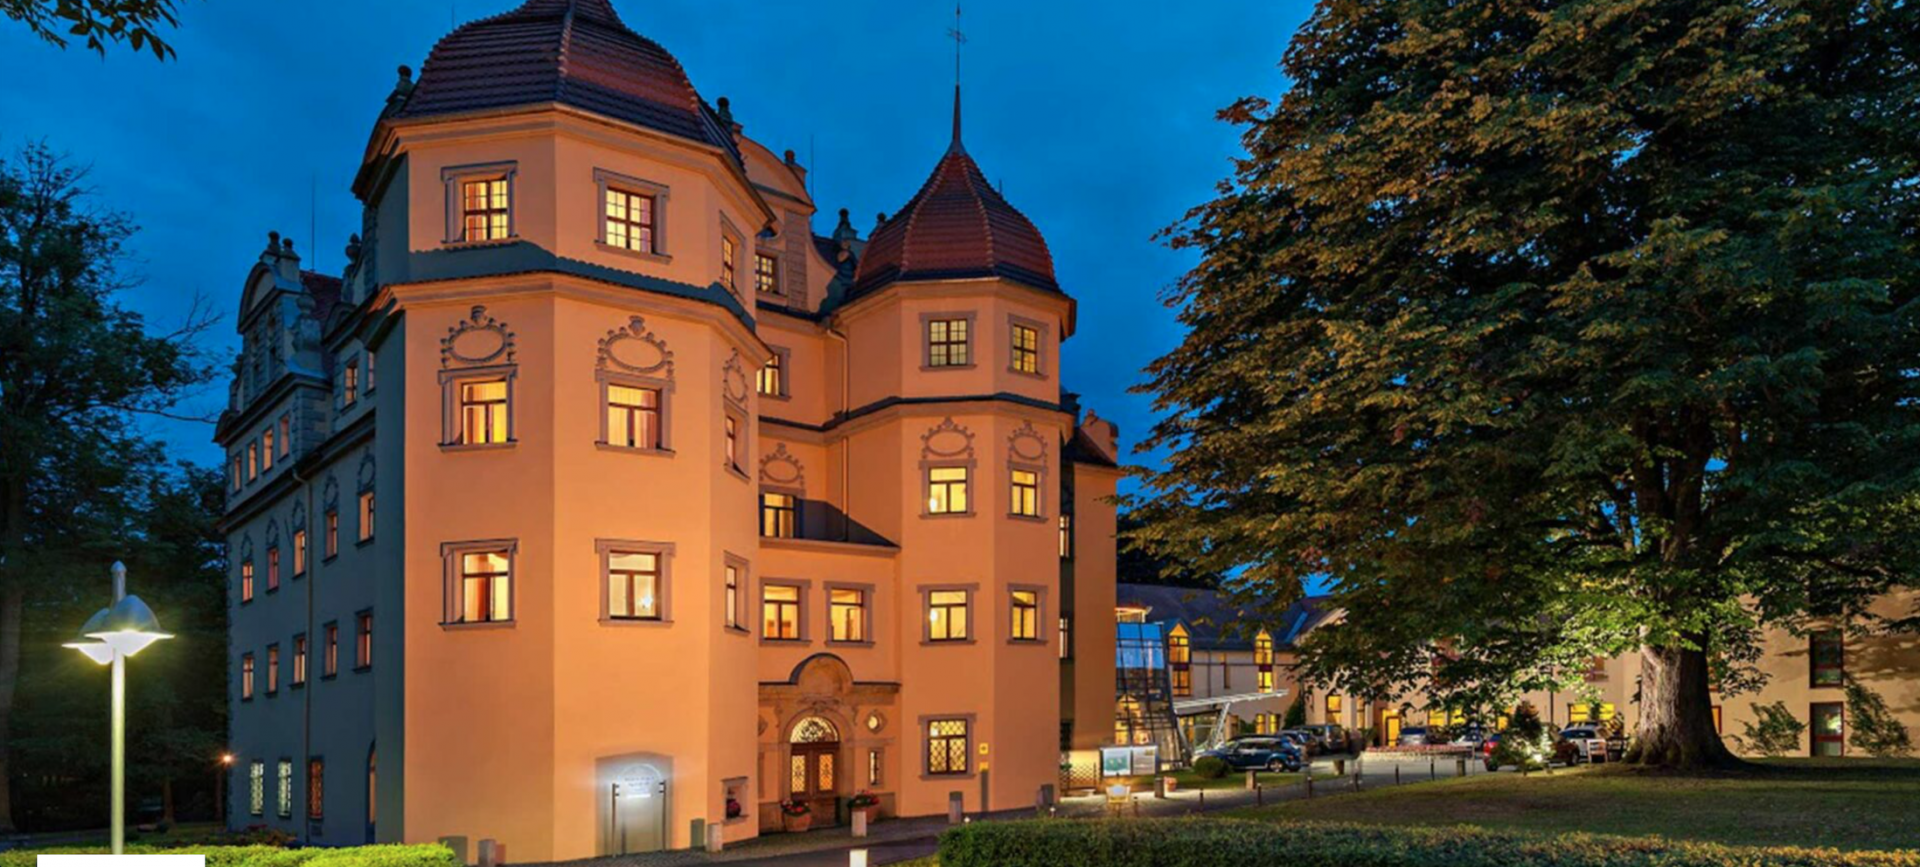 6 Tage Kulturwoche – Schlosshotel Althörnitz  in Zittau, Sachsen inkl. Halbpension